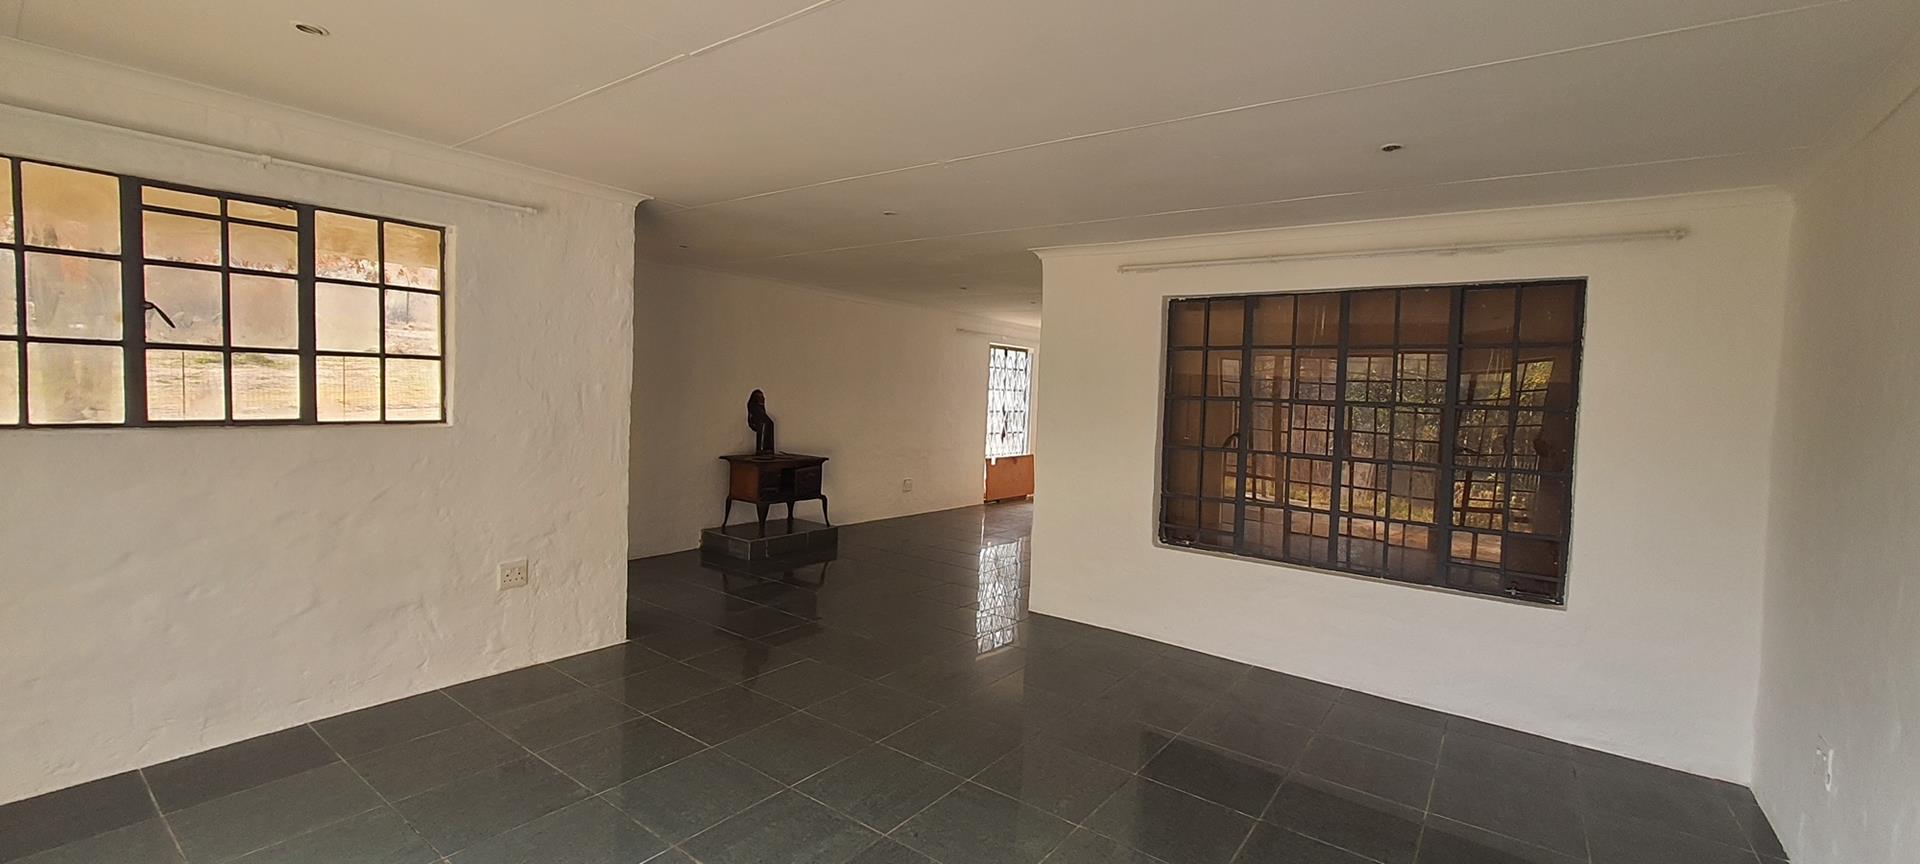 6 Bedroom Property for Sale in Walkerville Gauteng